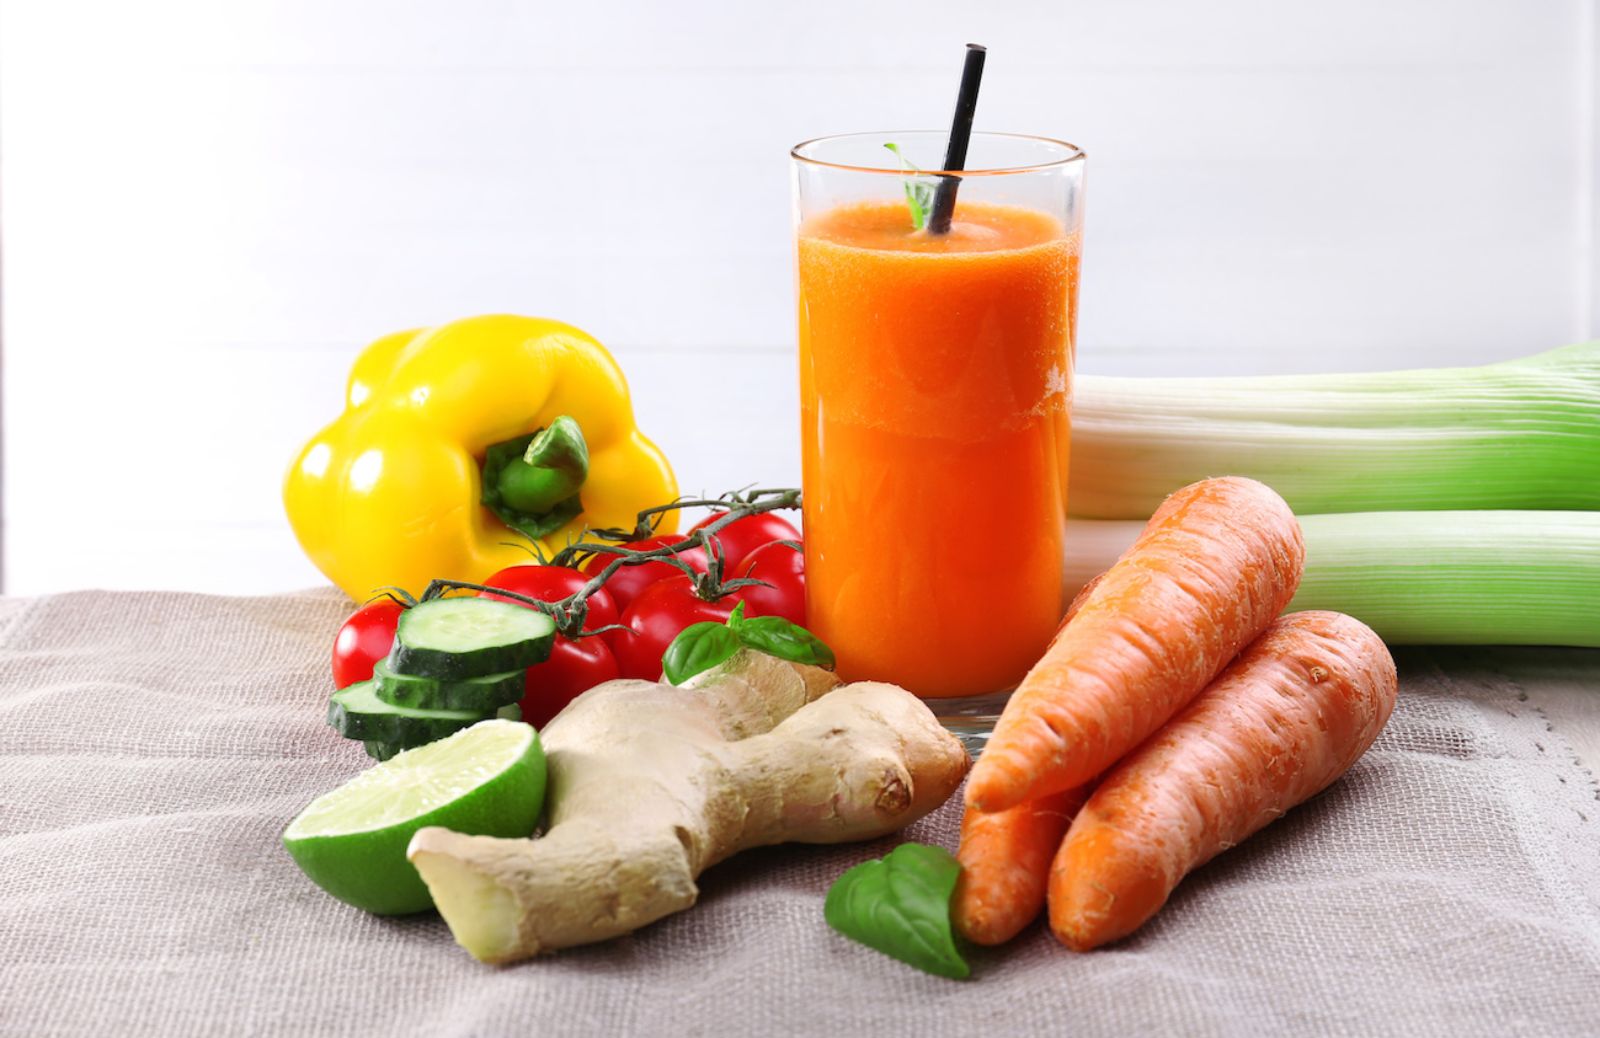 Come fare il pieno di energie con carote e lime